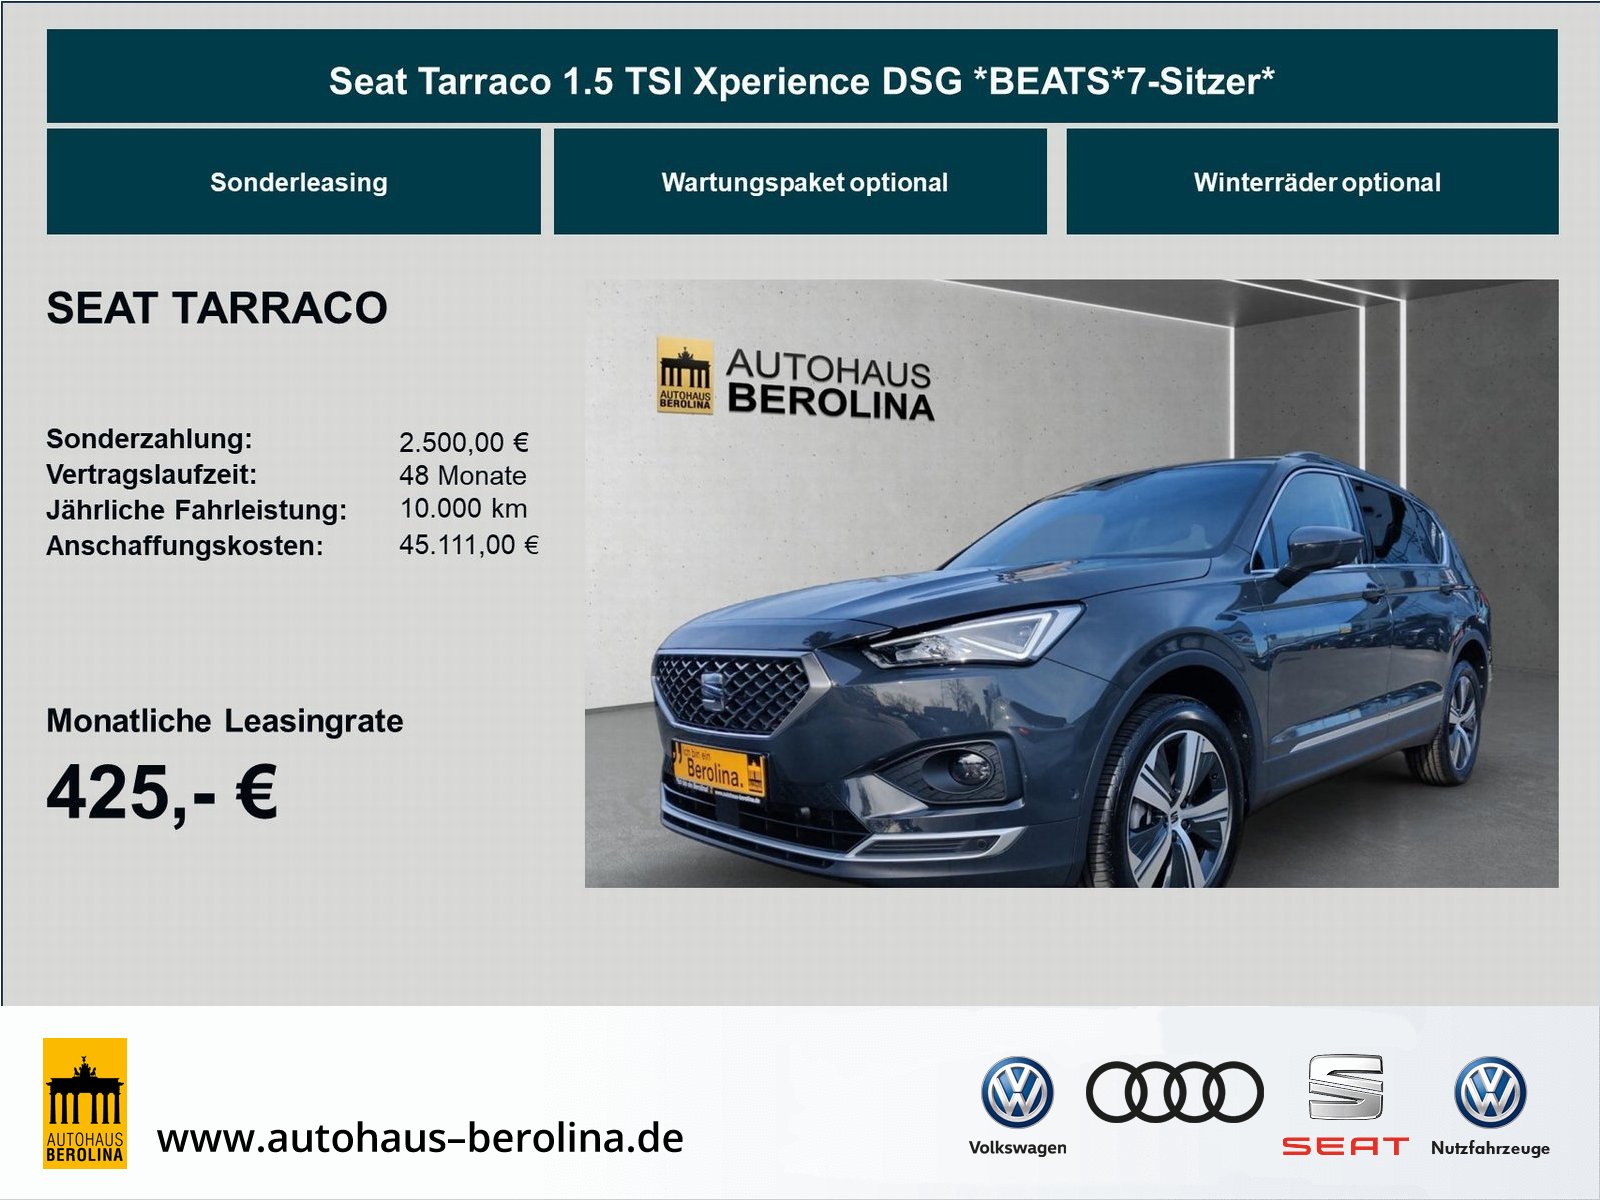 Seat Tarraco 1.5 TSI Xperience BEATS